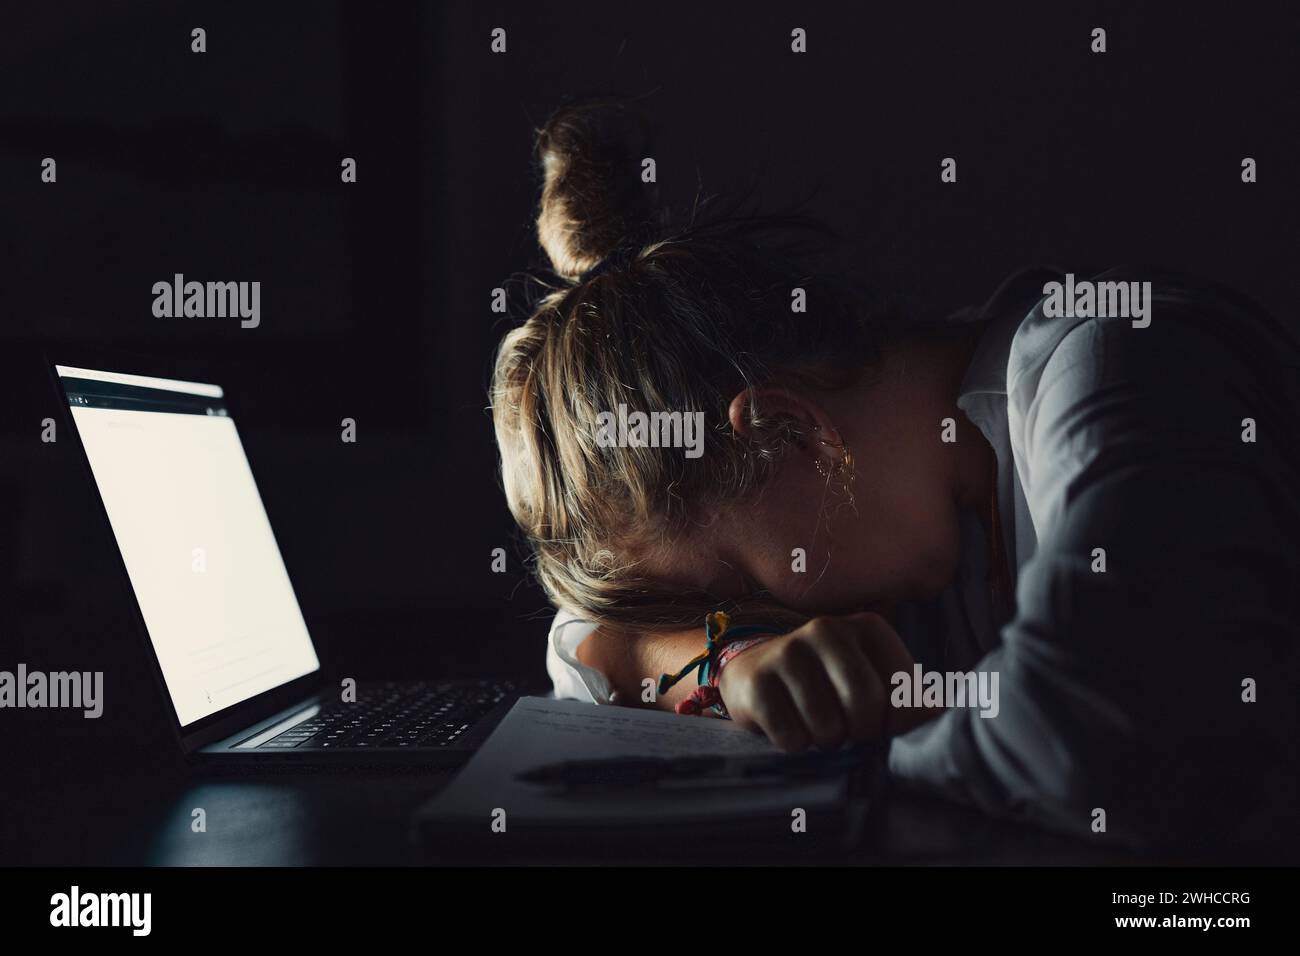 Müde Teenager Mädchen kaukasische Universitätsstudentin schlafen erschöpft nach schwieriger Lernprüfung, beraubte faule junge Frau, die schläft, sitzen am Schreibtisch und fühlen sich müde, wenn sie ein Nickerchen dösen, gelangweilt vom Studienkonzept Stockfoto